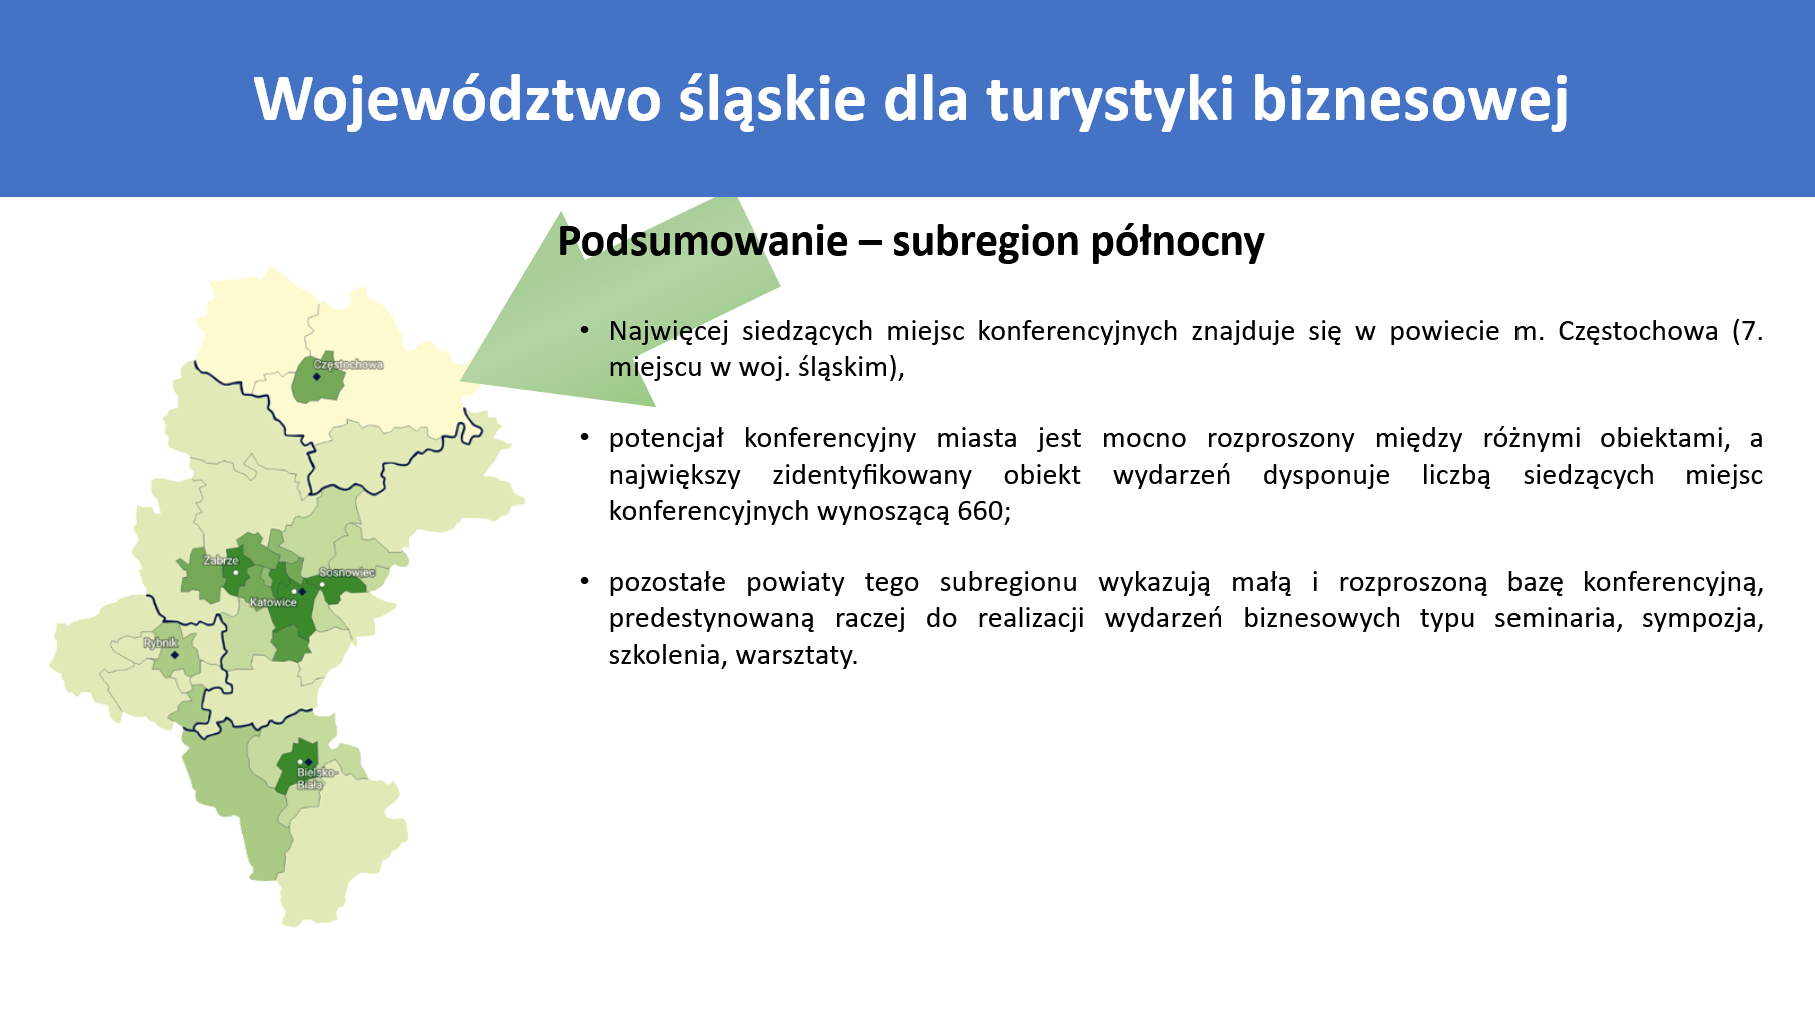 03-turystyka-biznesowa-wojewodztwo-slaskie-subregion-polnocny.png